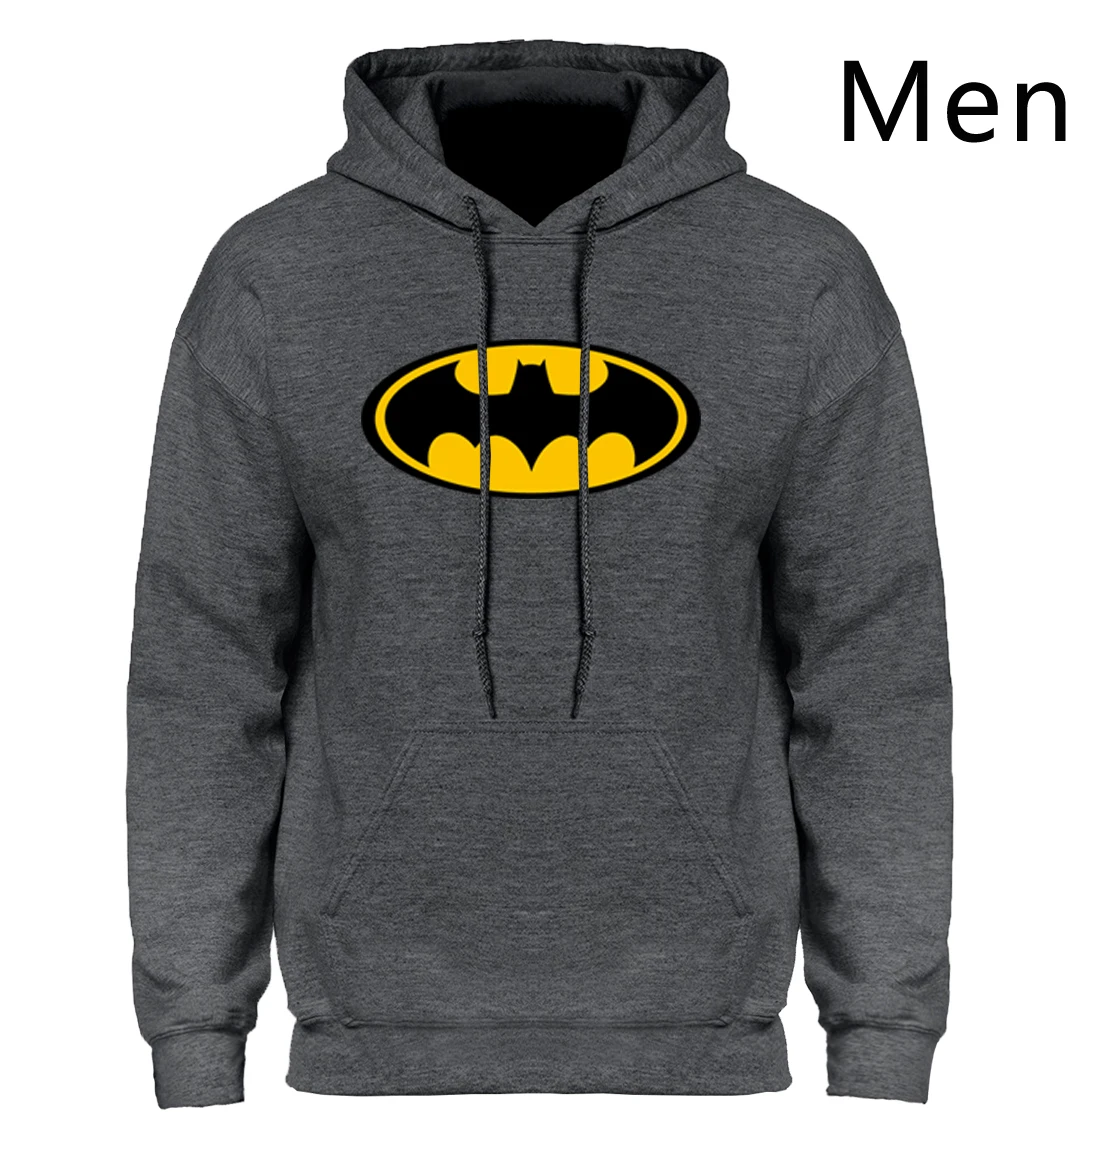 Толстовка с капюшоном и рисунком Бэтмена, толстовка с капюшоном для мужчин, зима-осень, толстовка с капюшоном, мужская повседневная облегающая дизайнерская мужская куртка, Лидер продаж - Цвет: Dark Gray